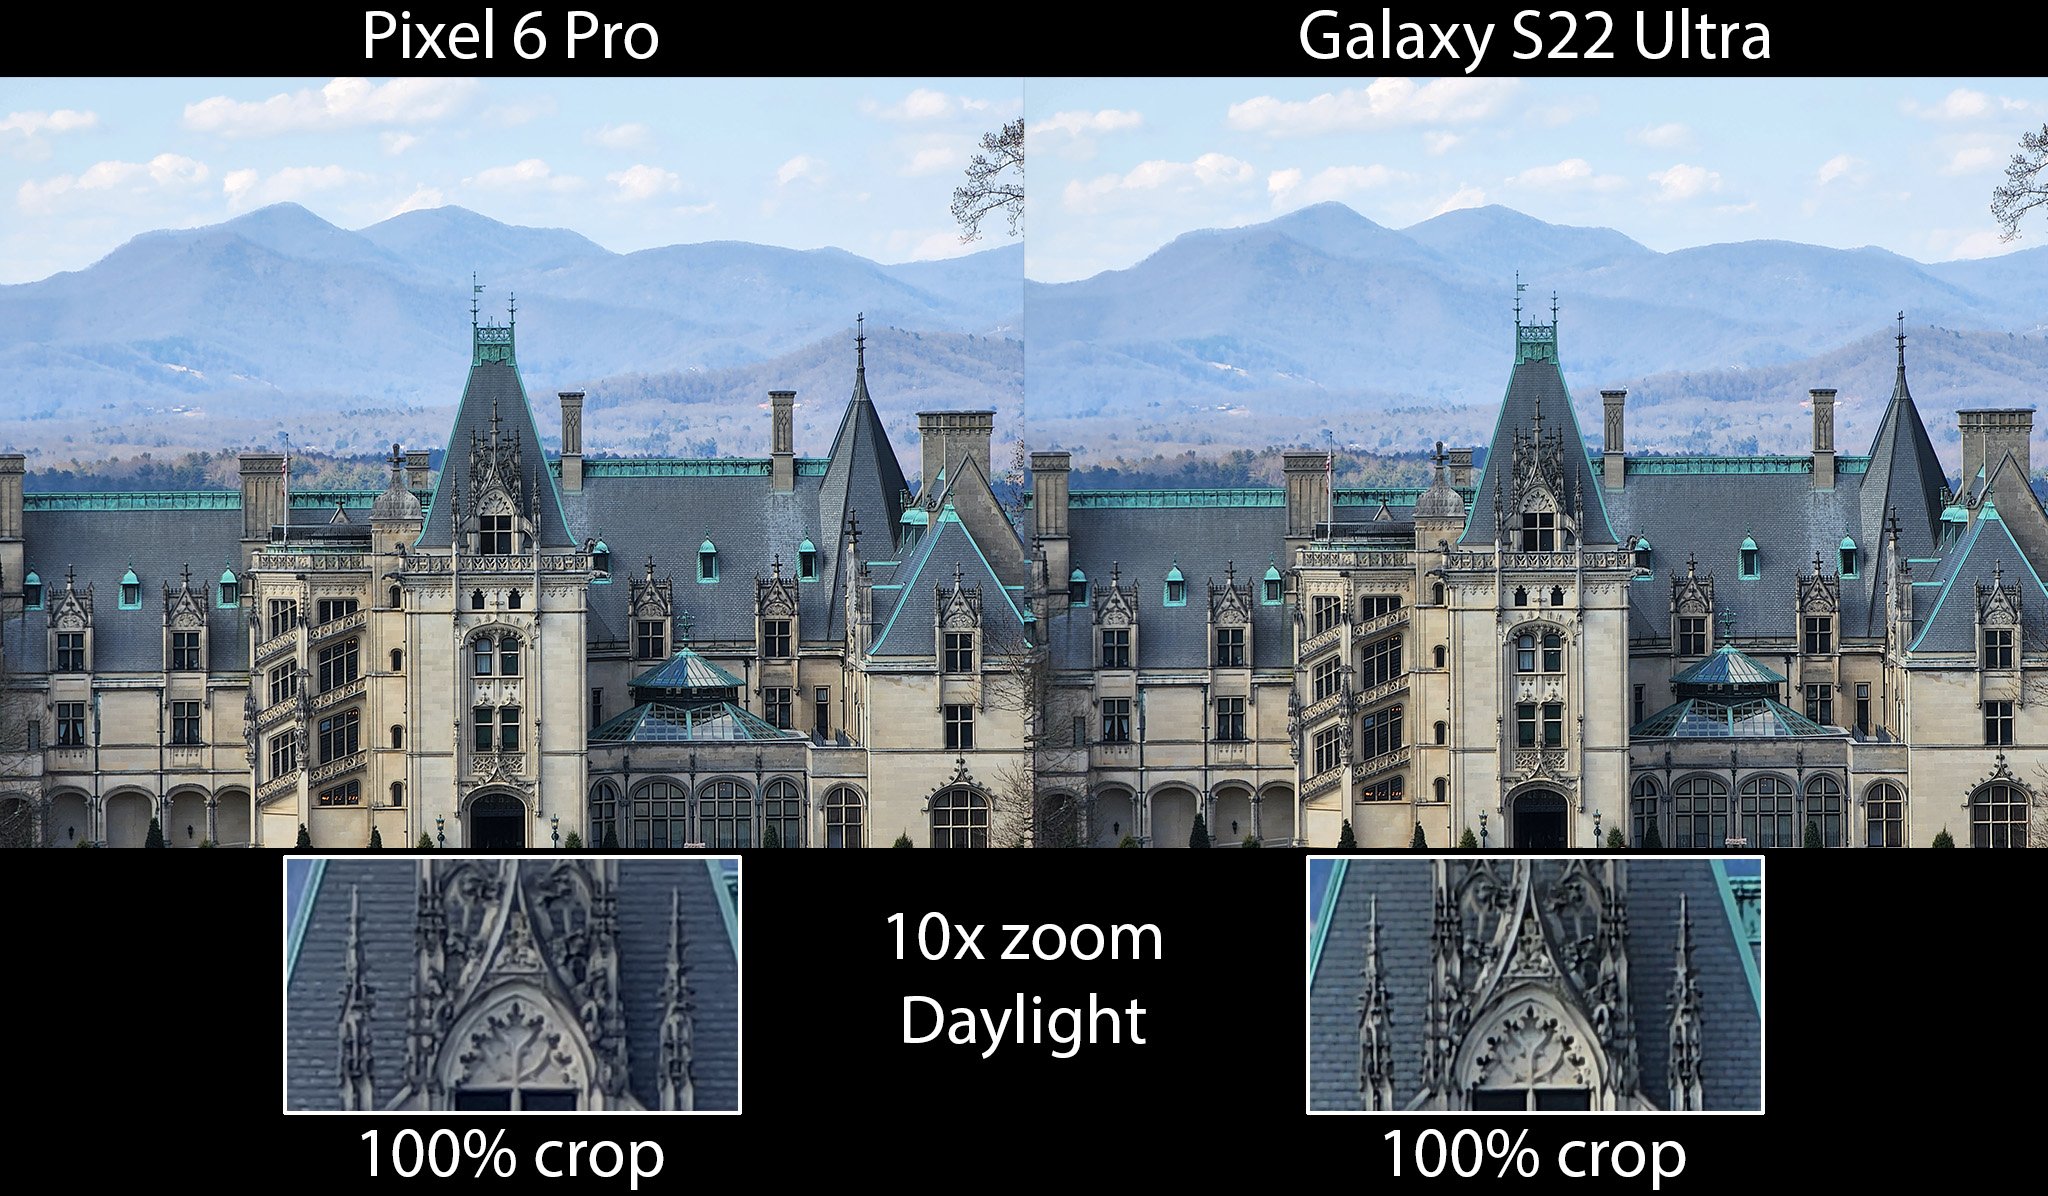 Galaxy S22 Ultra Vs Pixel 6 Pro 10x Tele